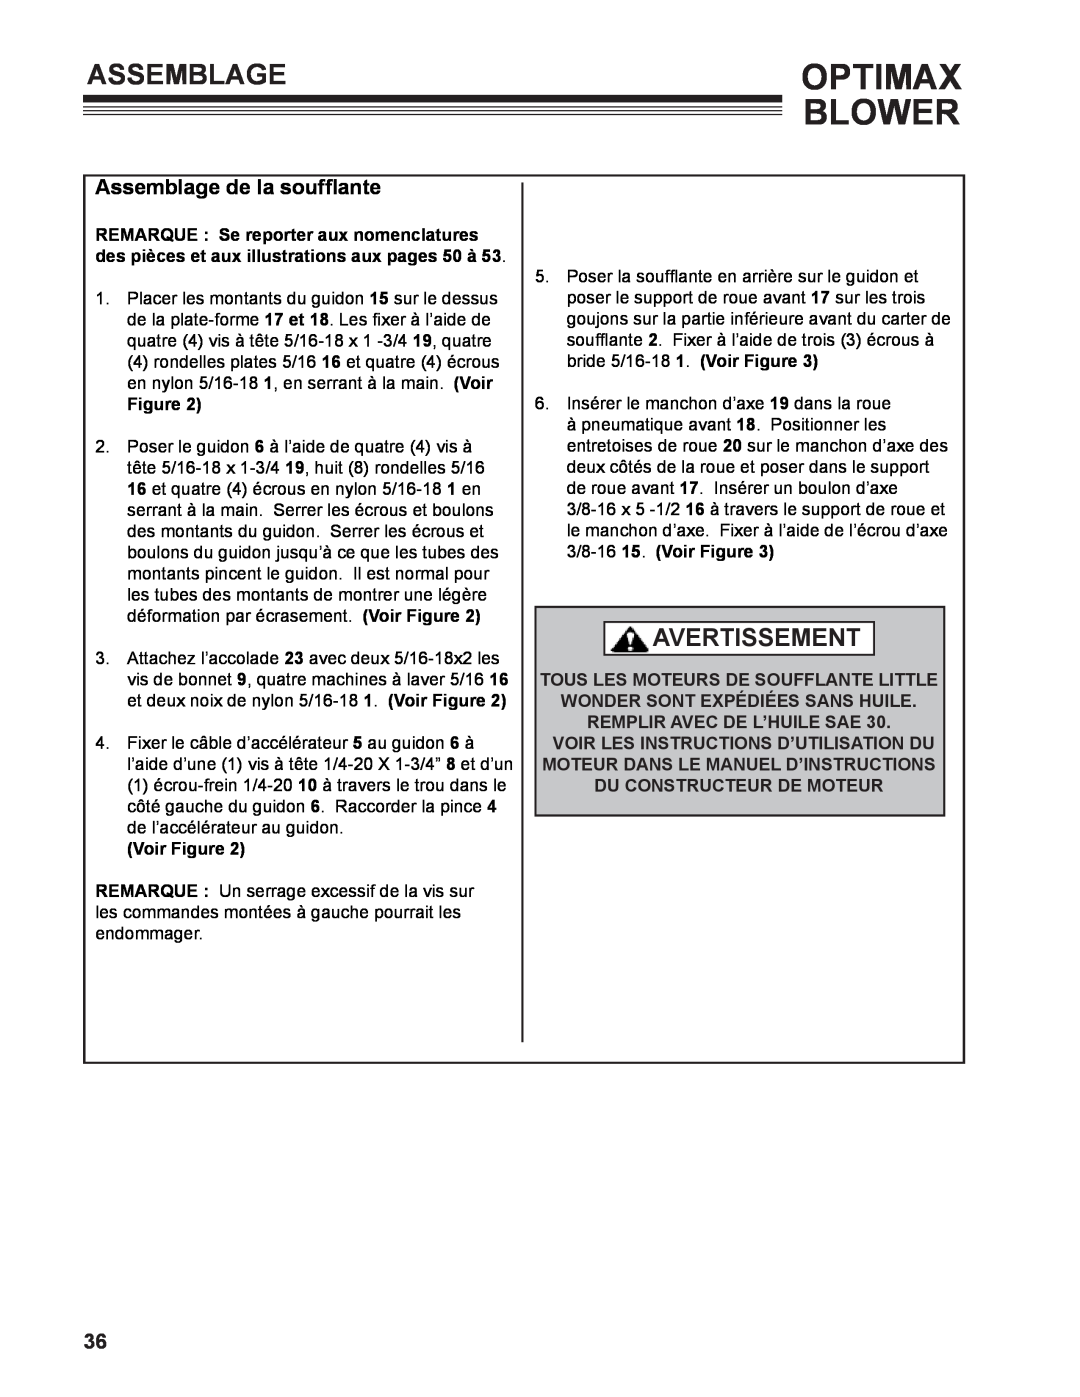 Little Wonder LB601-00-01 technical manual Assemblage de la soufflante, Optimax Blower, Avertissement, Voir Figure 